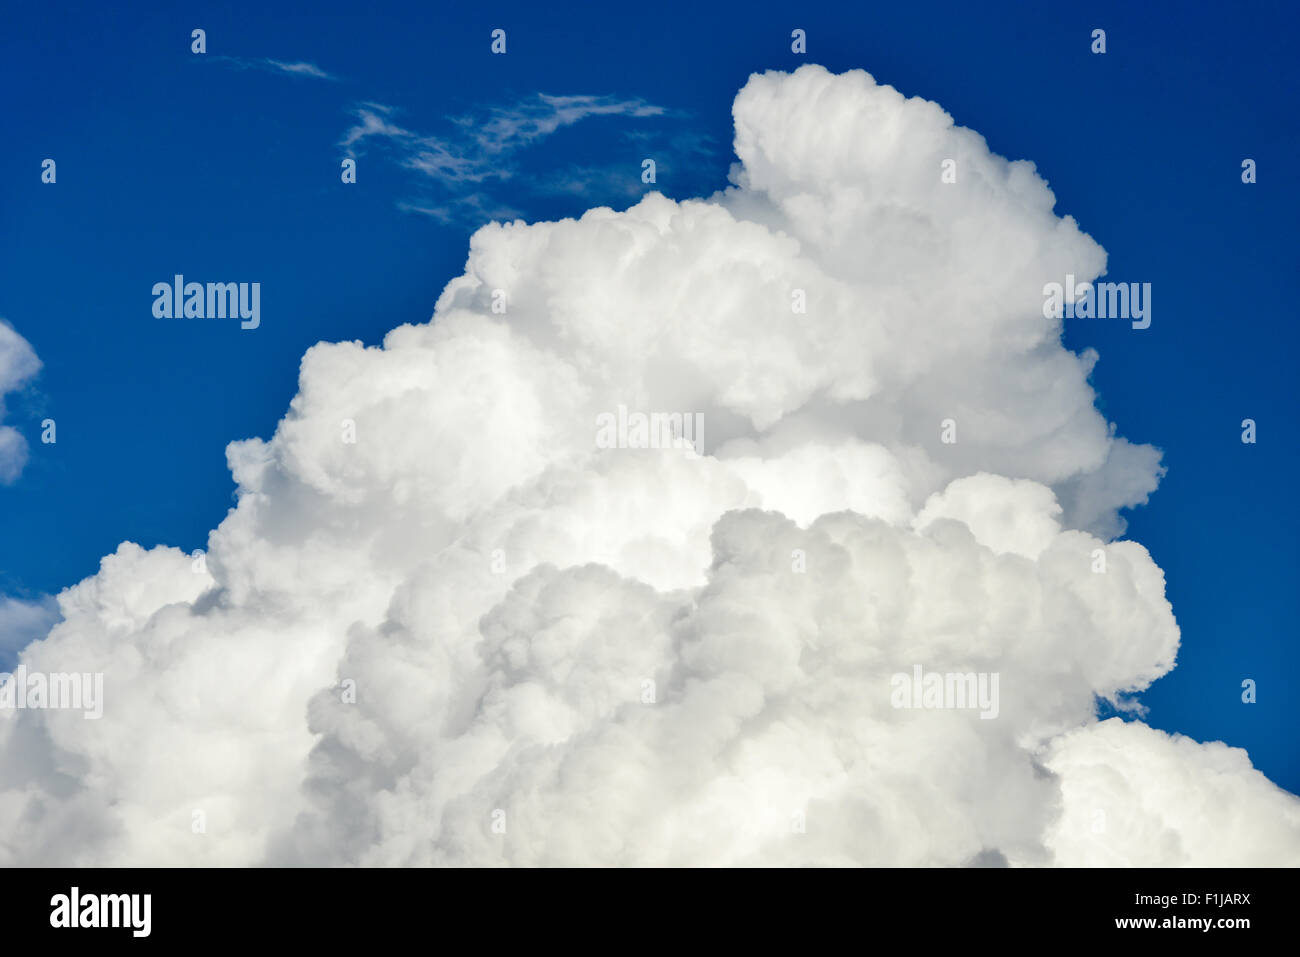 Las nubes cirros contra el cielo azul, cerca del aeropuerto de Heathrow, Greater London, England, Reino Unido Foto de stock